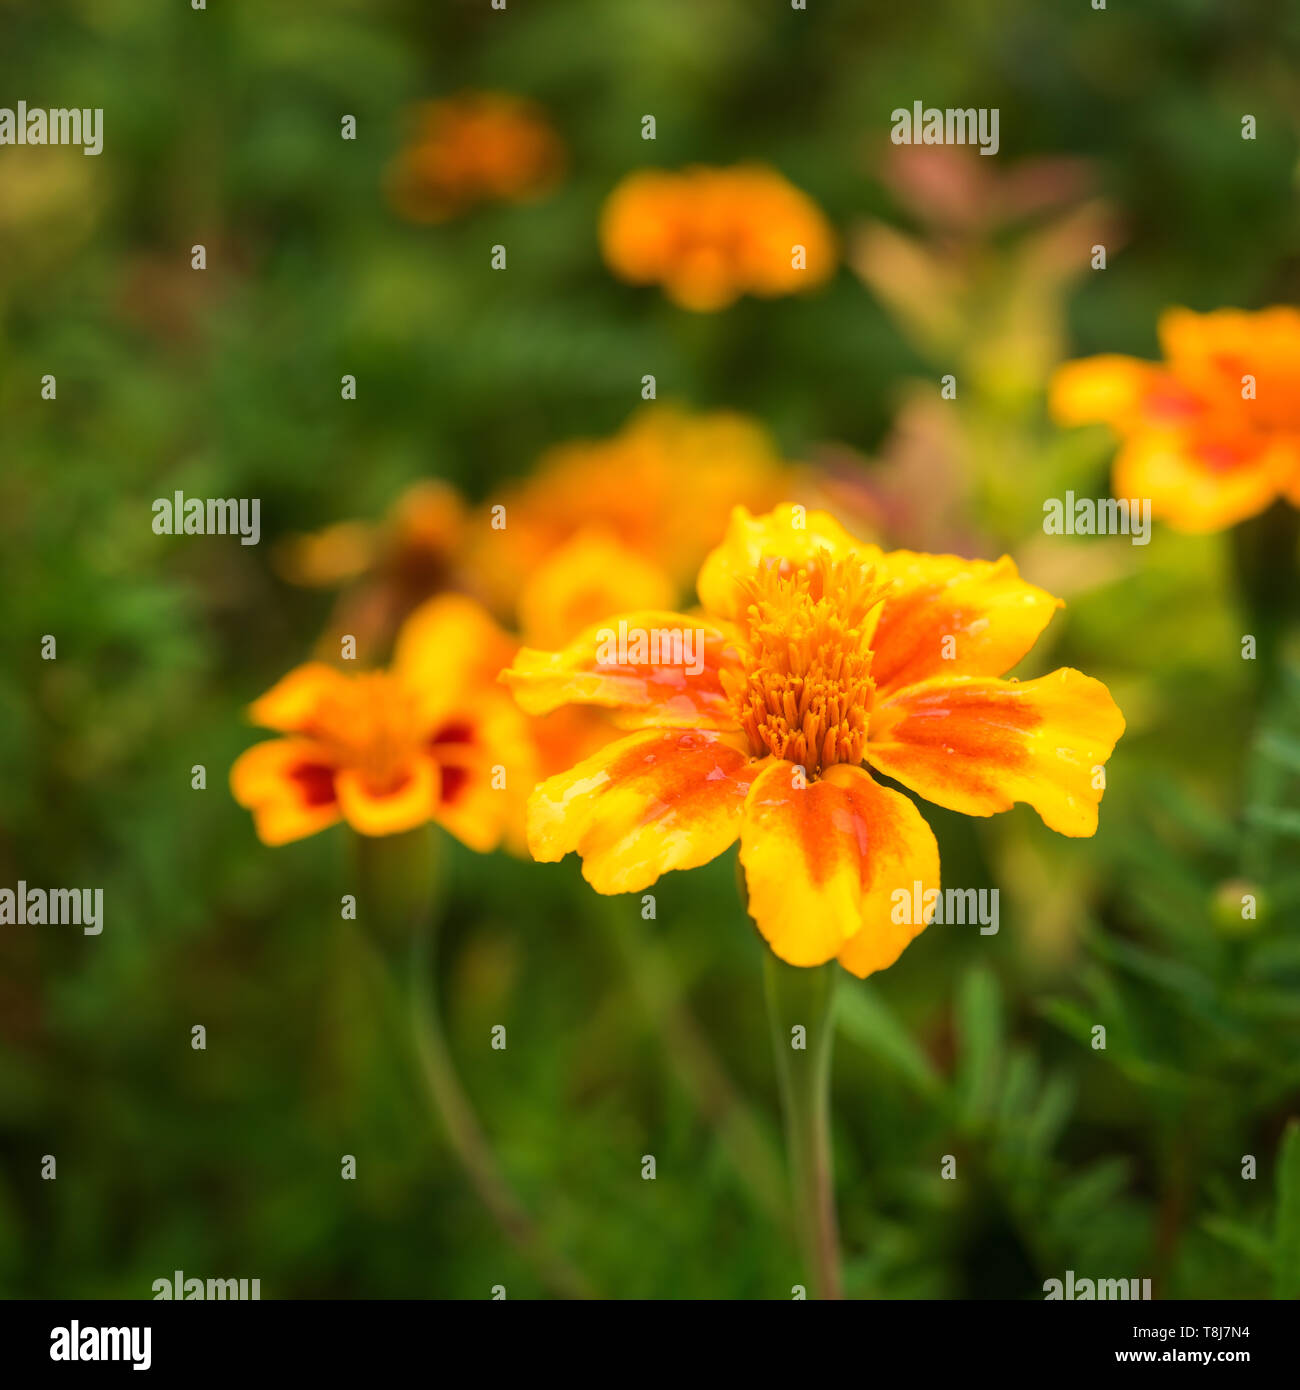 Quadratisches Bild von hellen, warmen Gelb und Orange Rot tagetes Blume mit Unkonzentrierten grünes Laub und ein paar Blumen auf Hintergrund. Selektive konzentrieren. Gruß Stockfoto